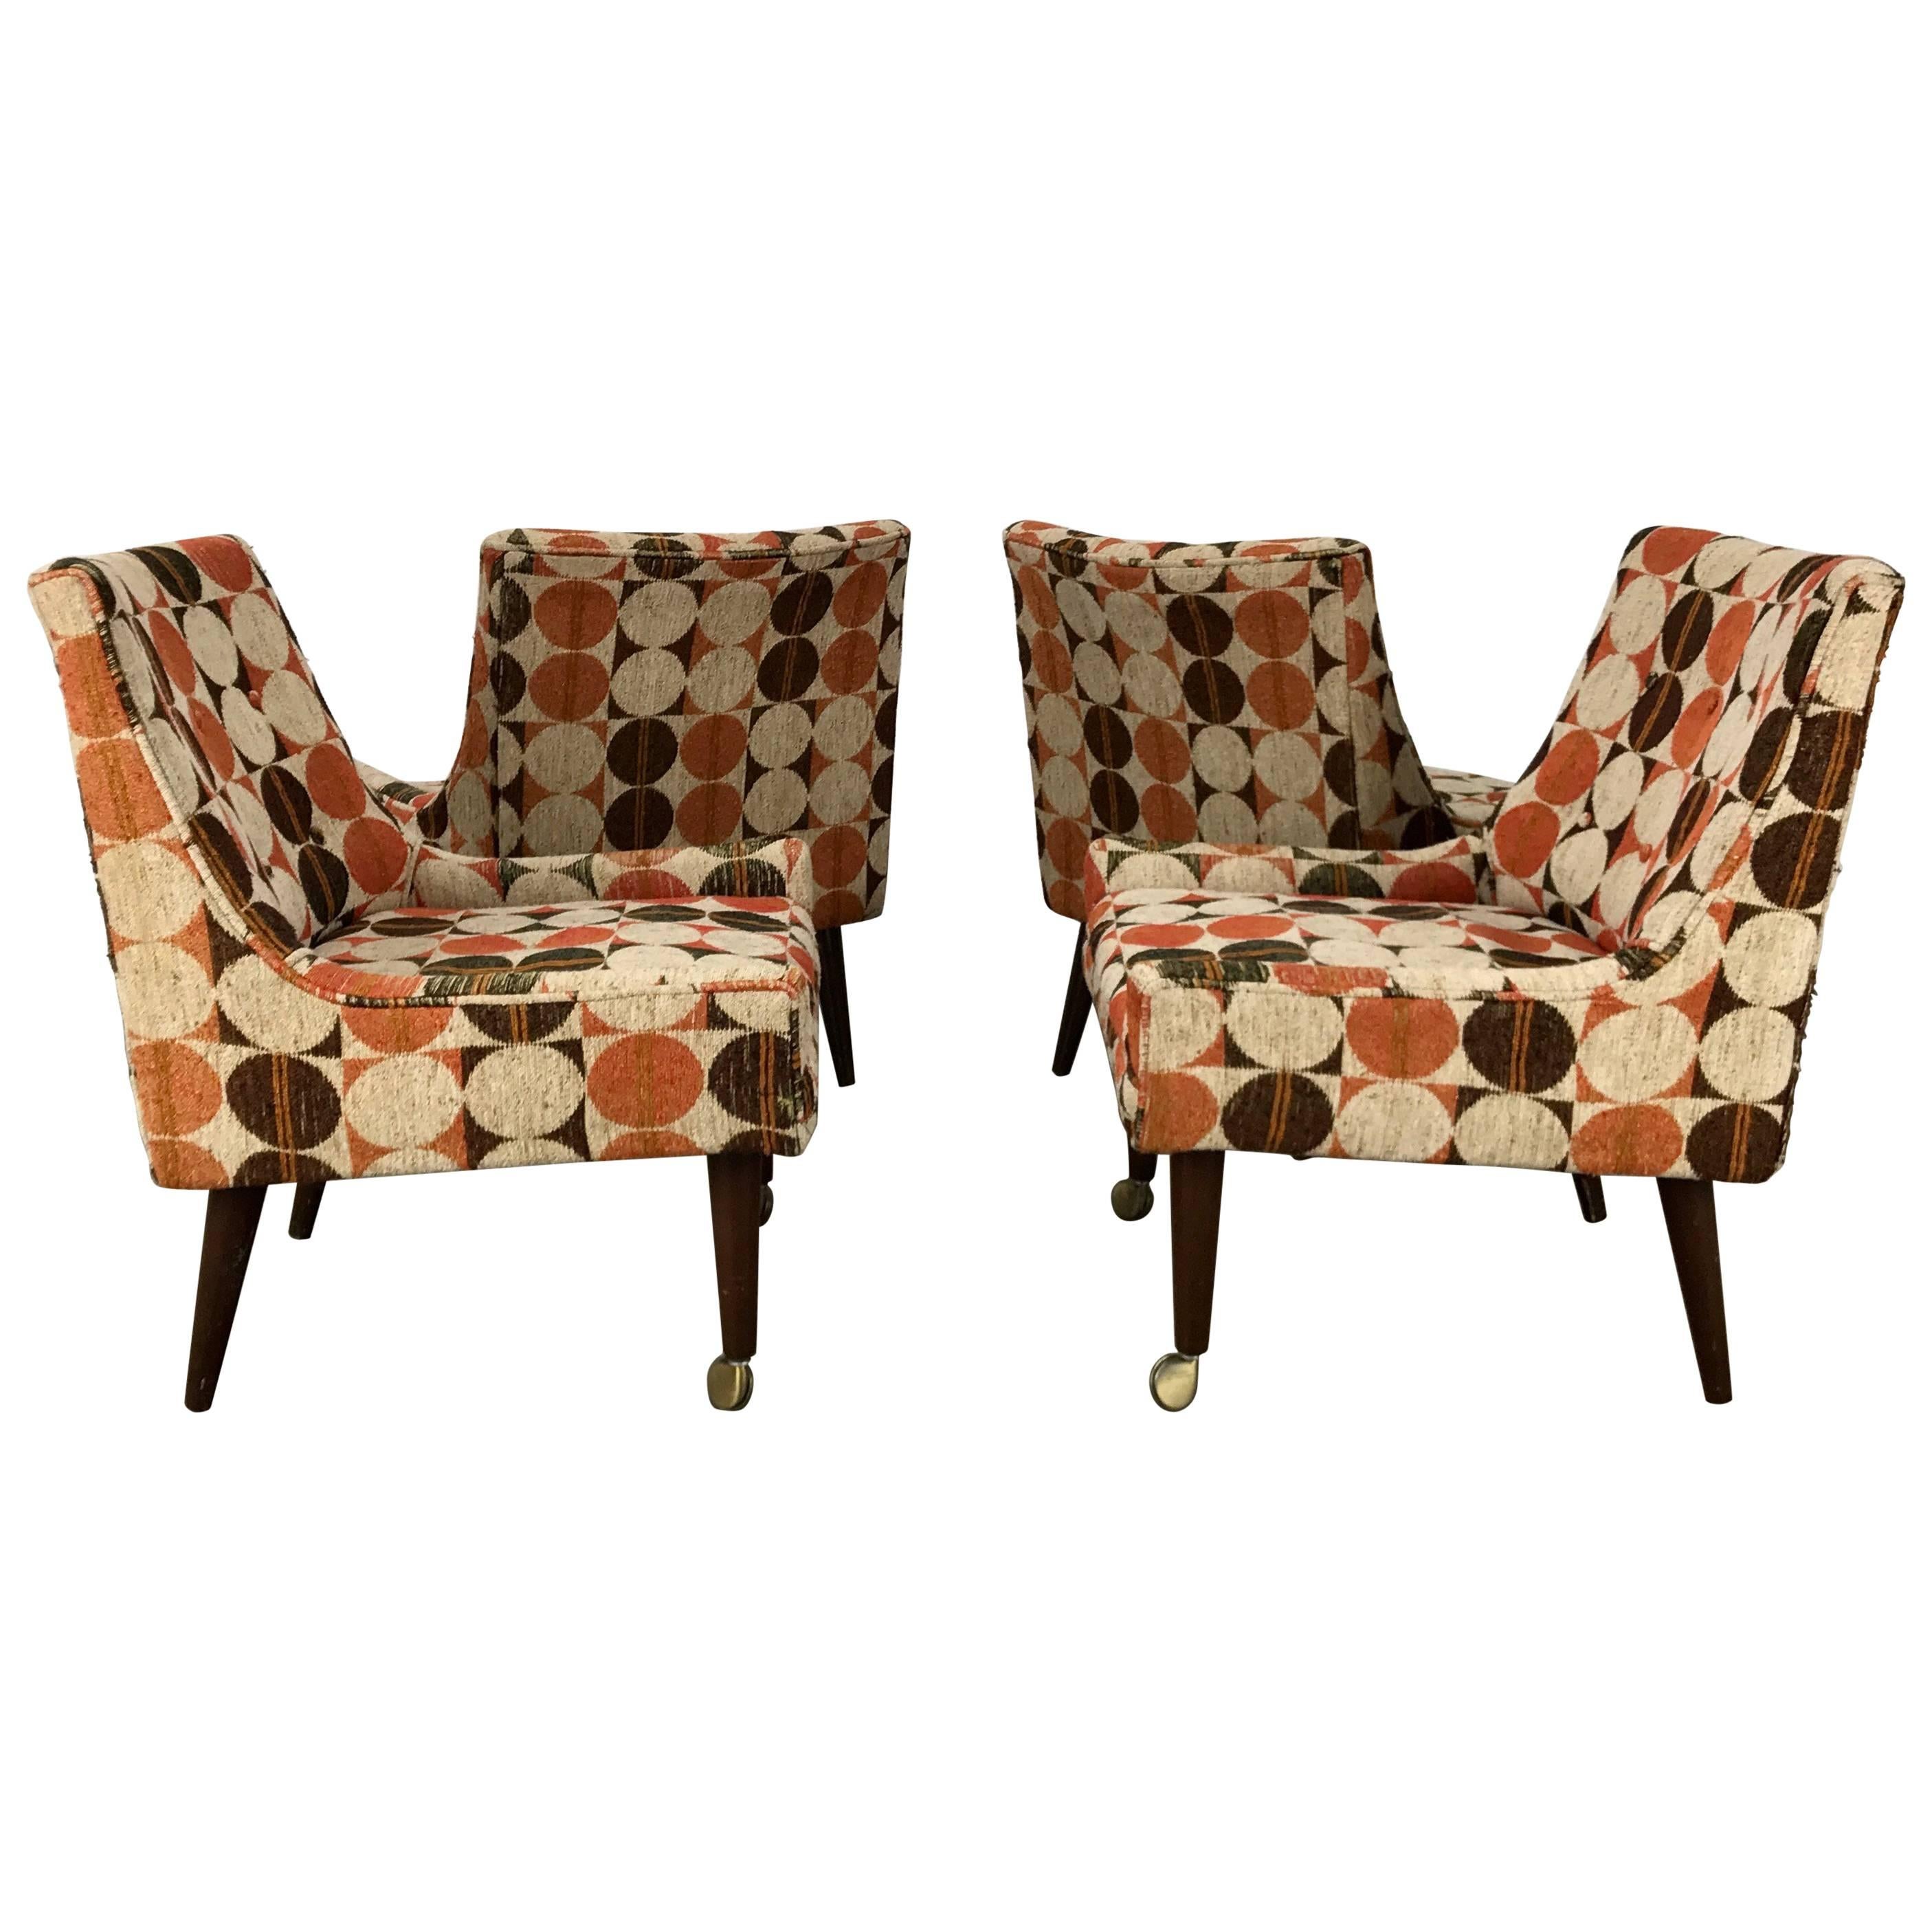 Set of Four Modernist Slipper Chairs in Manner of Harvey Probber, Larsen Fabric